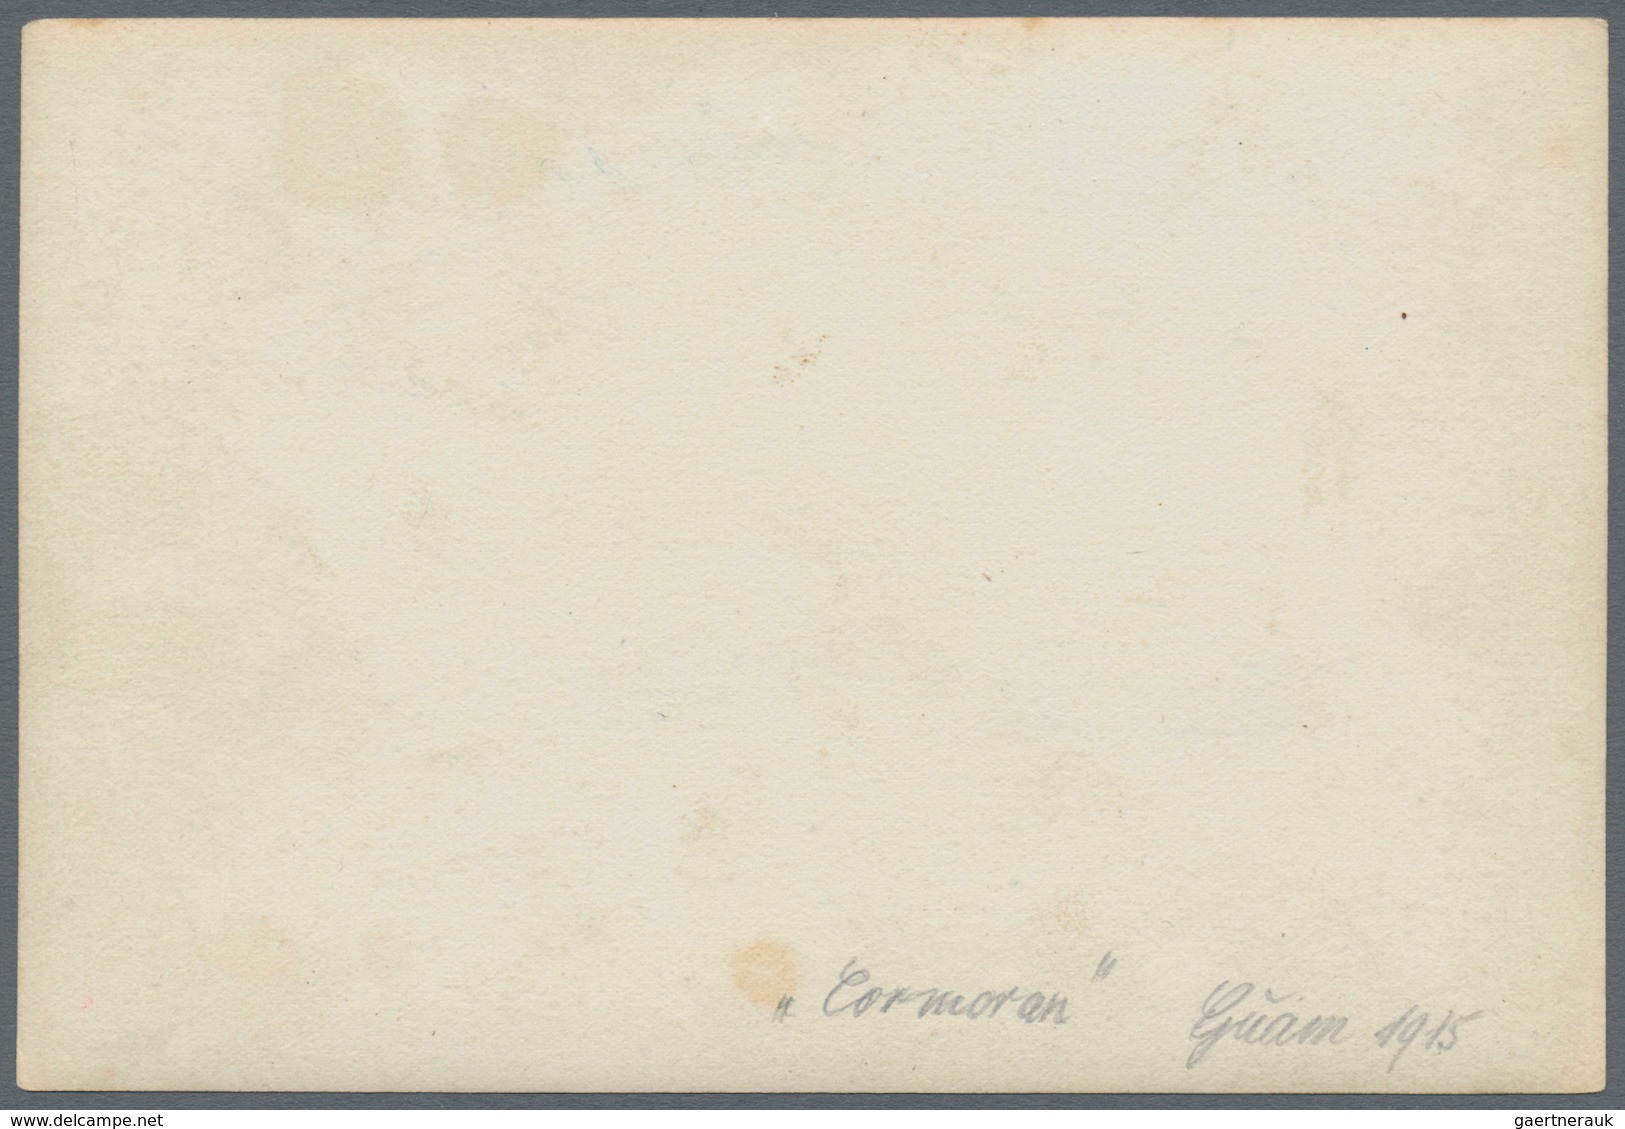 Deutsch-Neuguinea - Besonderheiten: 1915 (28.11.), FP-Brief Mit 2 X Stempel "KAIS.DEUTSCHE MARINE-SC - Duits-Nieuw-Guinea